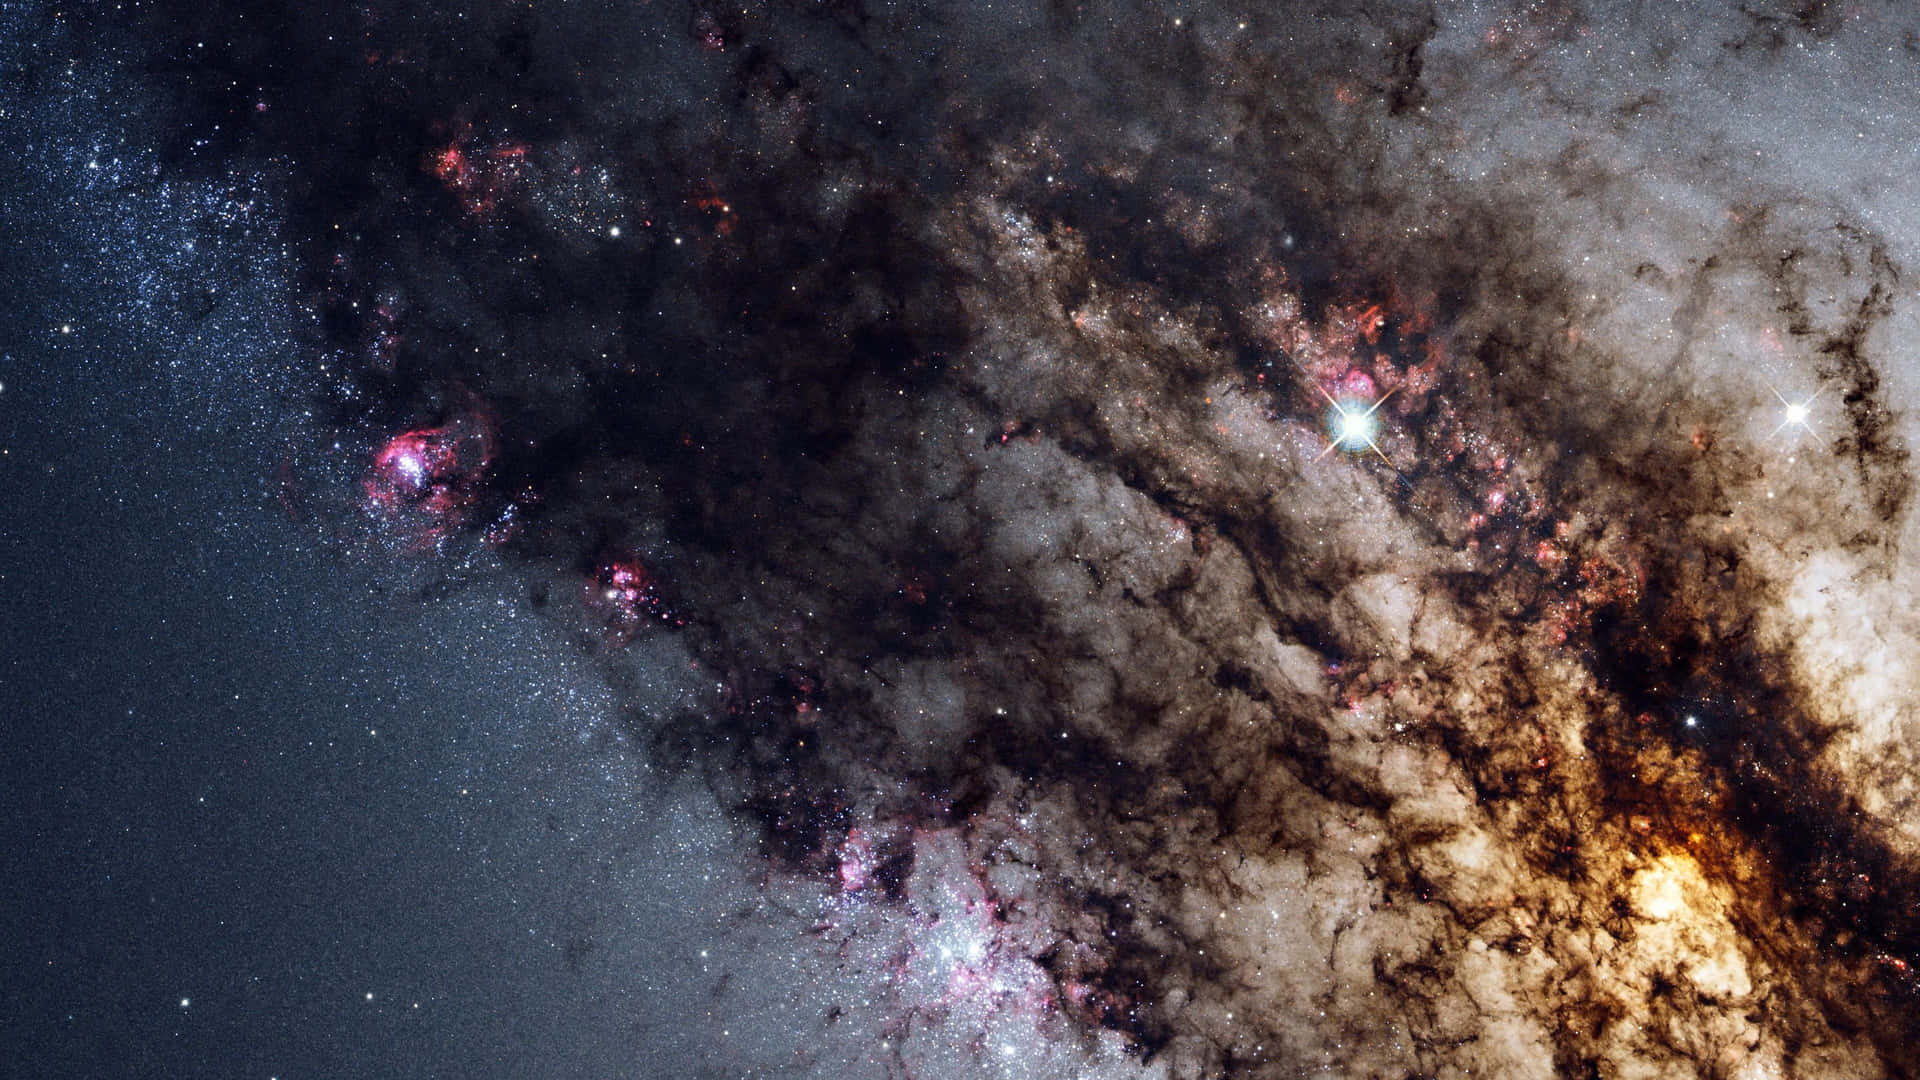 Einfaszinierender Blick Auf Rotwirbelnde Galaxien Im Weltraum Wallpaper